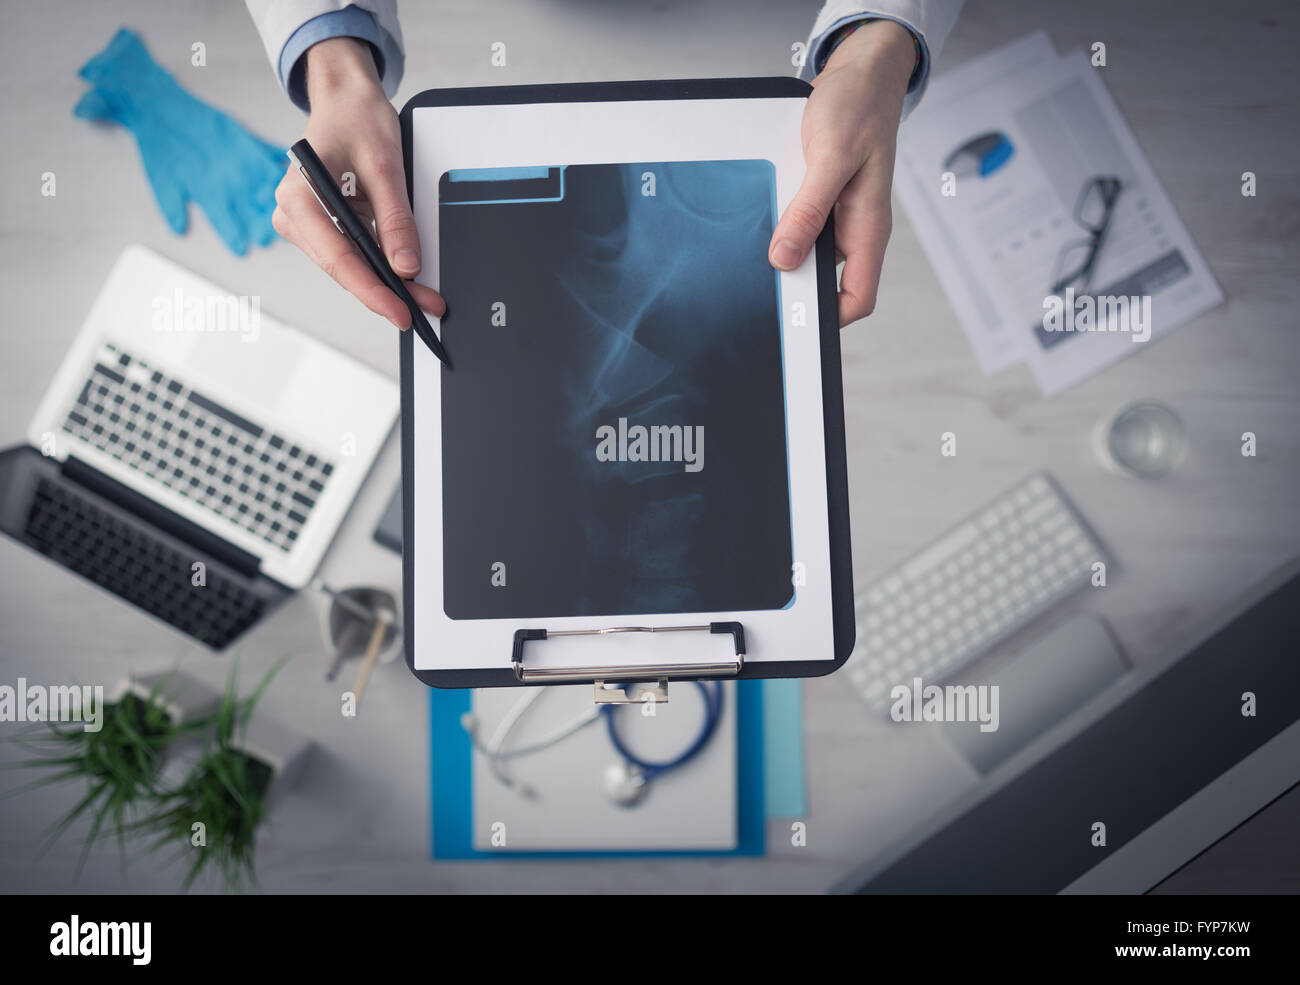 Radiologo cheching un'immagine a raggi x della colonna vertebrale umana, mani e appunti da vicino con il desktop su sfondo, vista dall'alto Foto Stock